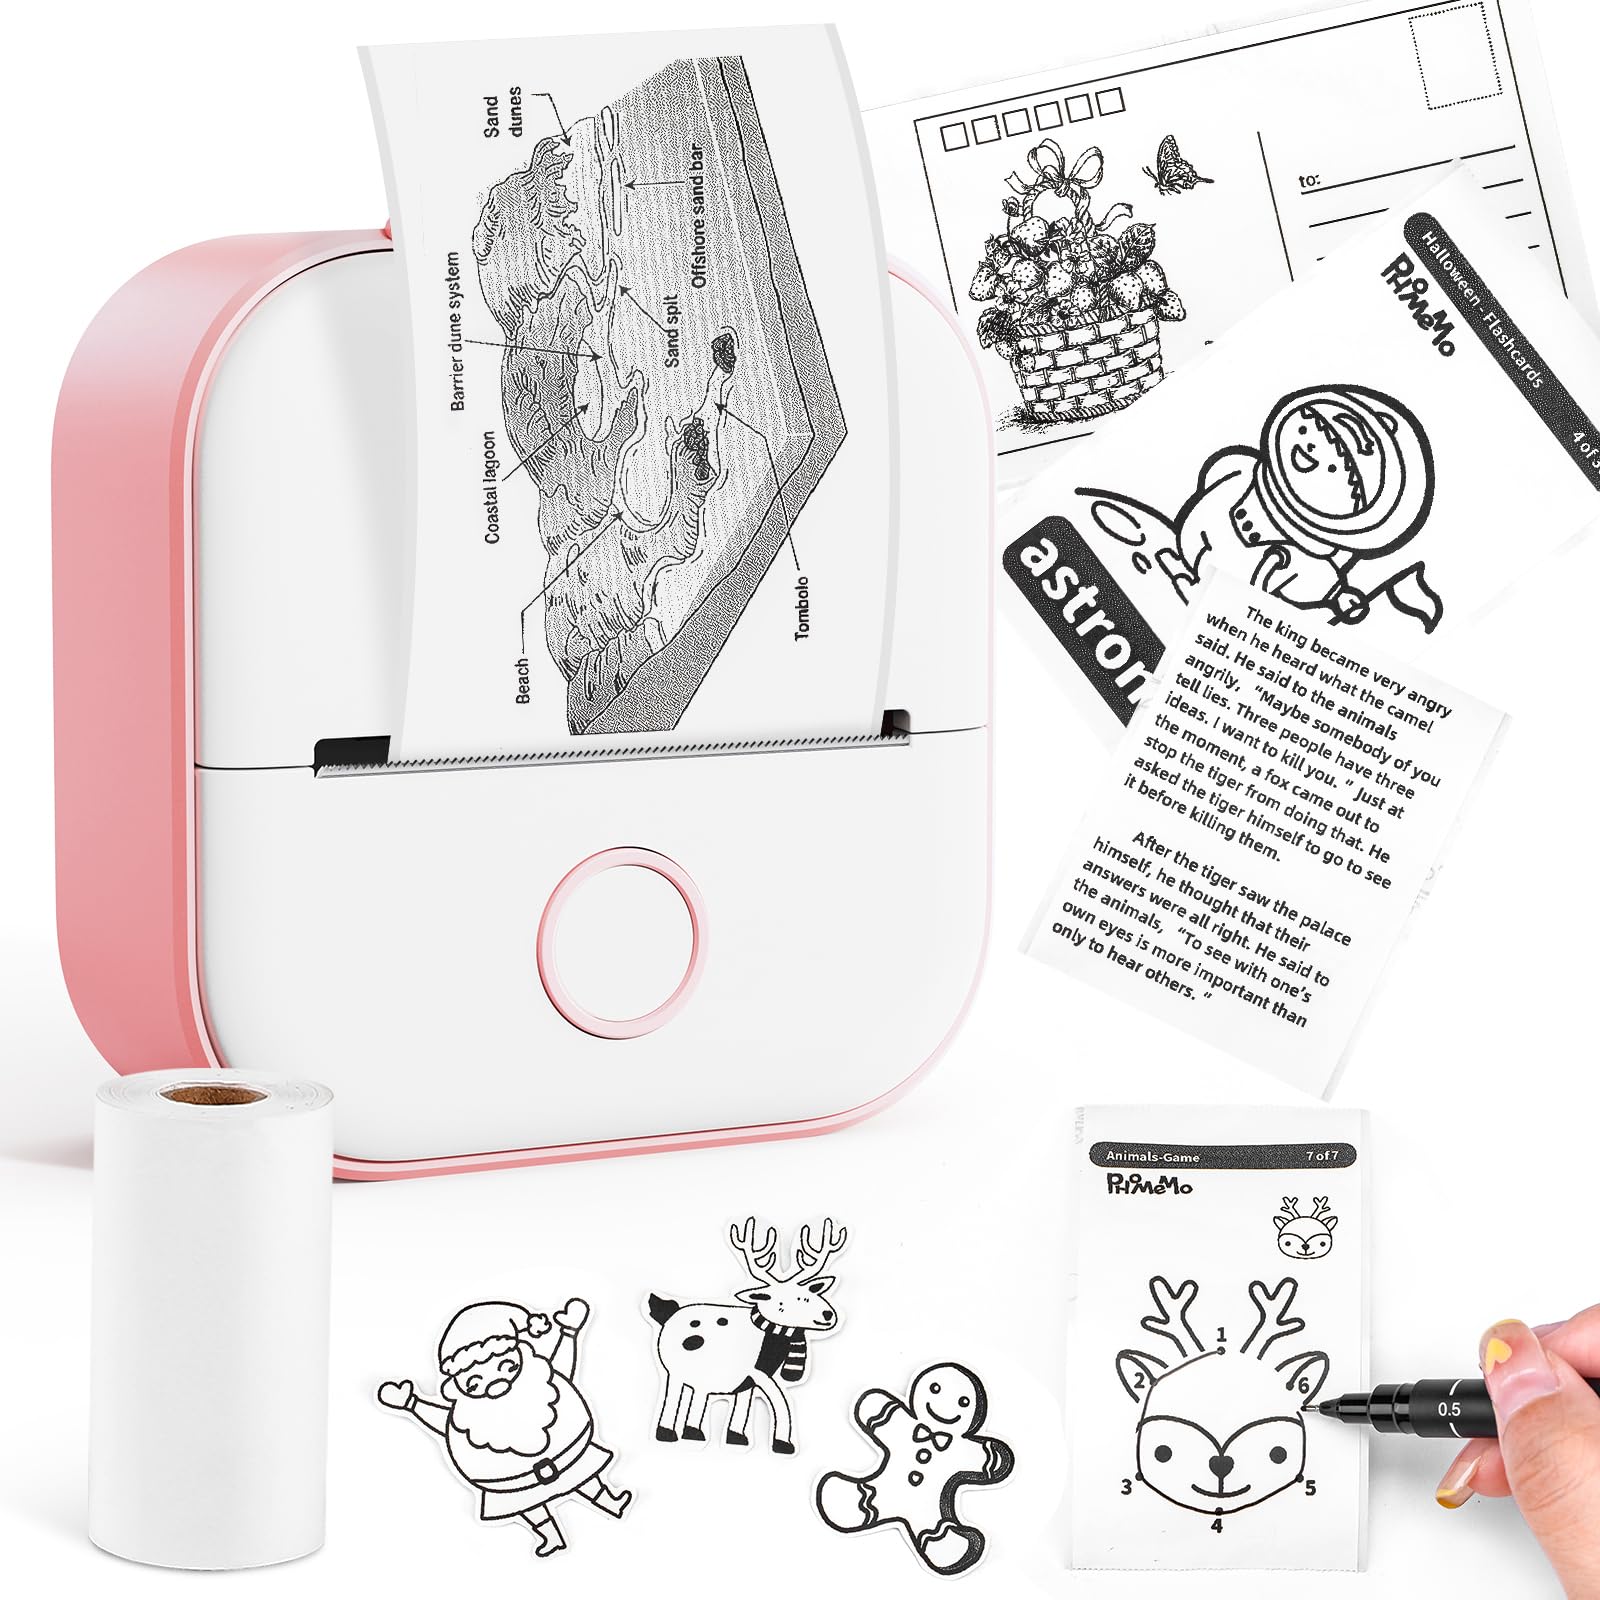 Memoking Thermodrucker - T02 Pocket Bluetooth Wireless Portable Mobile Drucker, 50-53mm Schwarzweißdruck für Geschenkstudien Notizen Arbeit Kinder, Kompatibel mit iOS & Android, Rosa